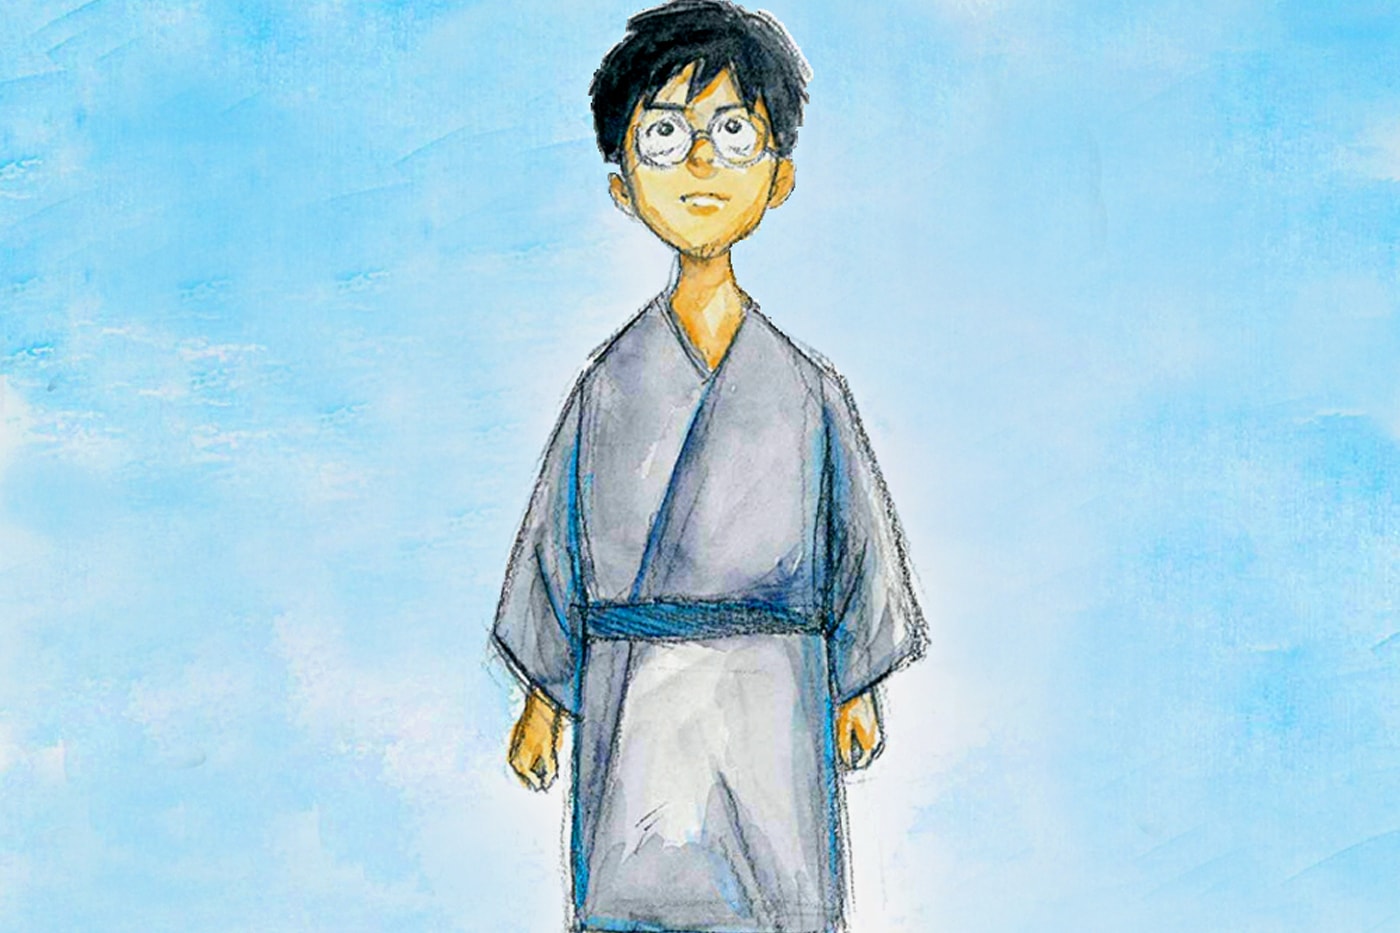 宮崎駿監督による長編最新作『君たちはどう生きるか』の音楽を久石譲が担当することが判明 Hayao Miyazaki's latest feature film How do you live Joe Hisaishi